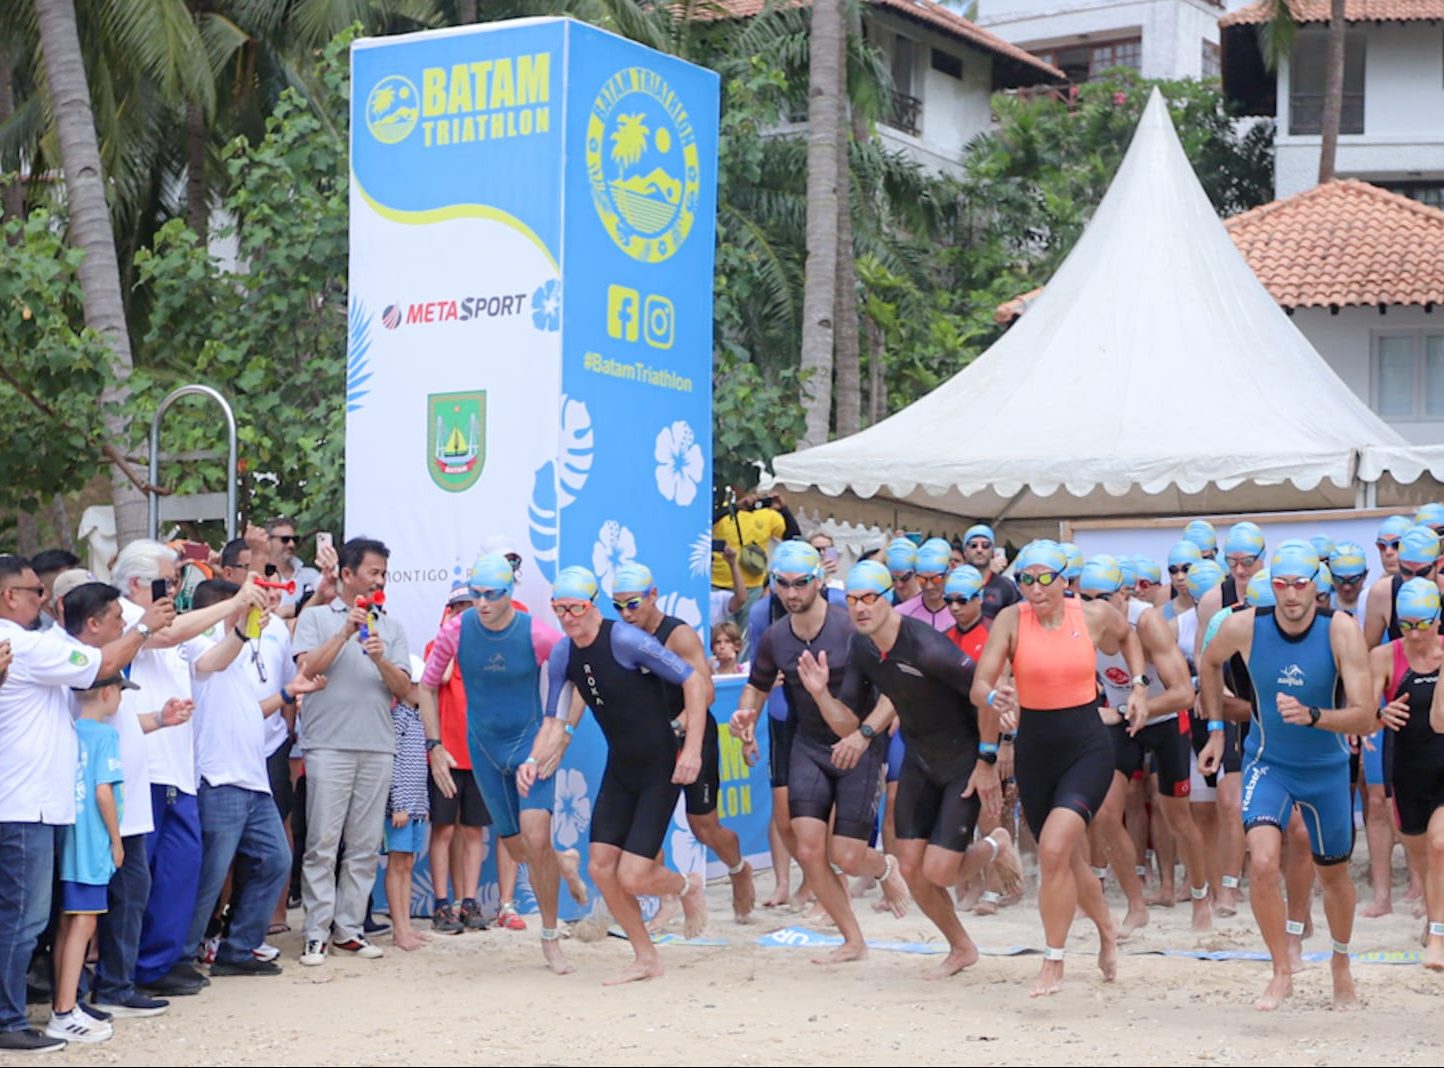 Wali Kota Batam Muhammad Rudi melepas peserta lomba Batam Triathlon, Sabtu (20/5/2023).